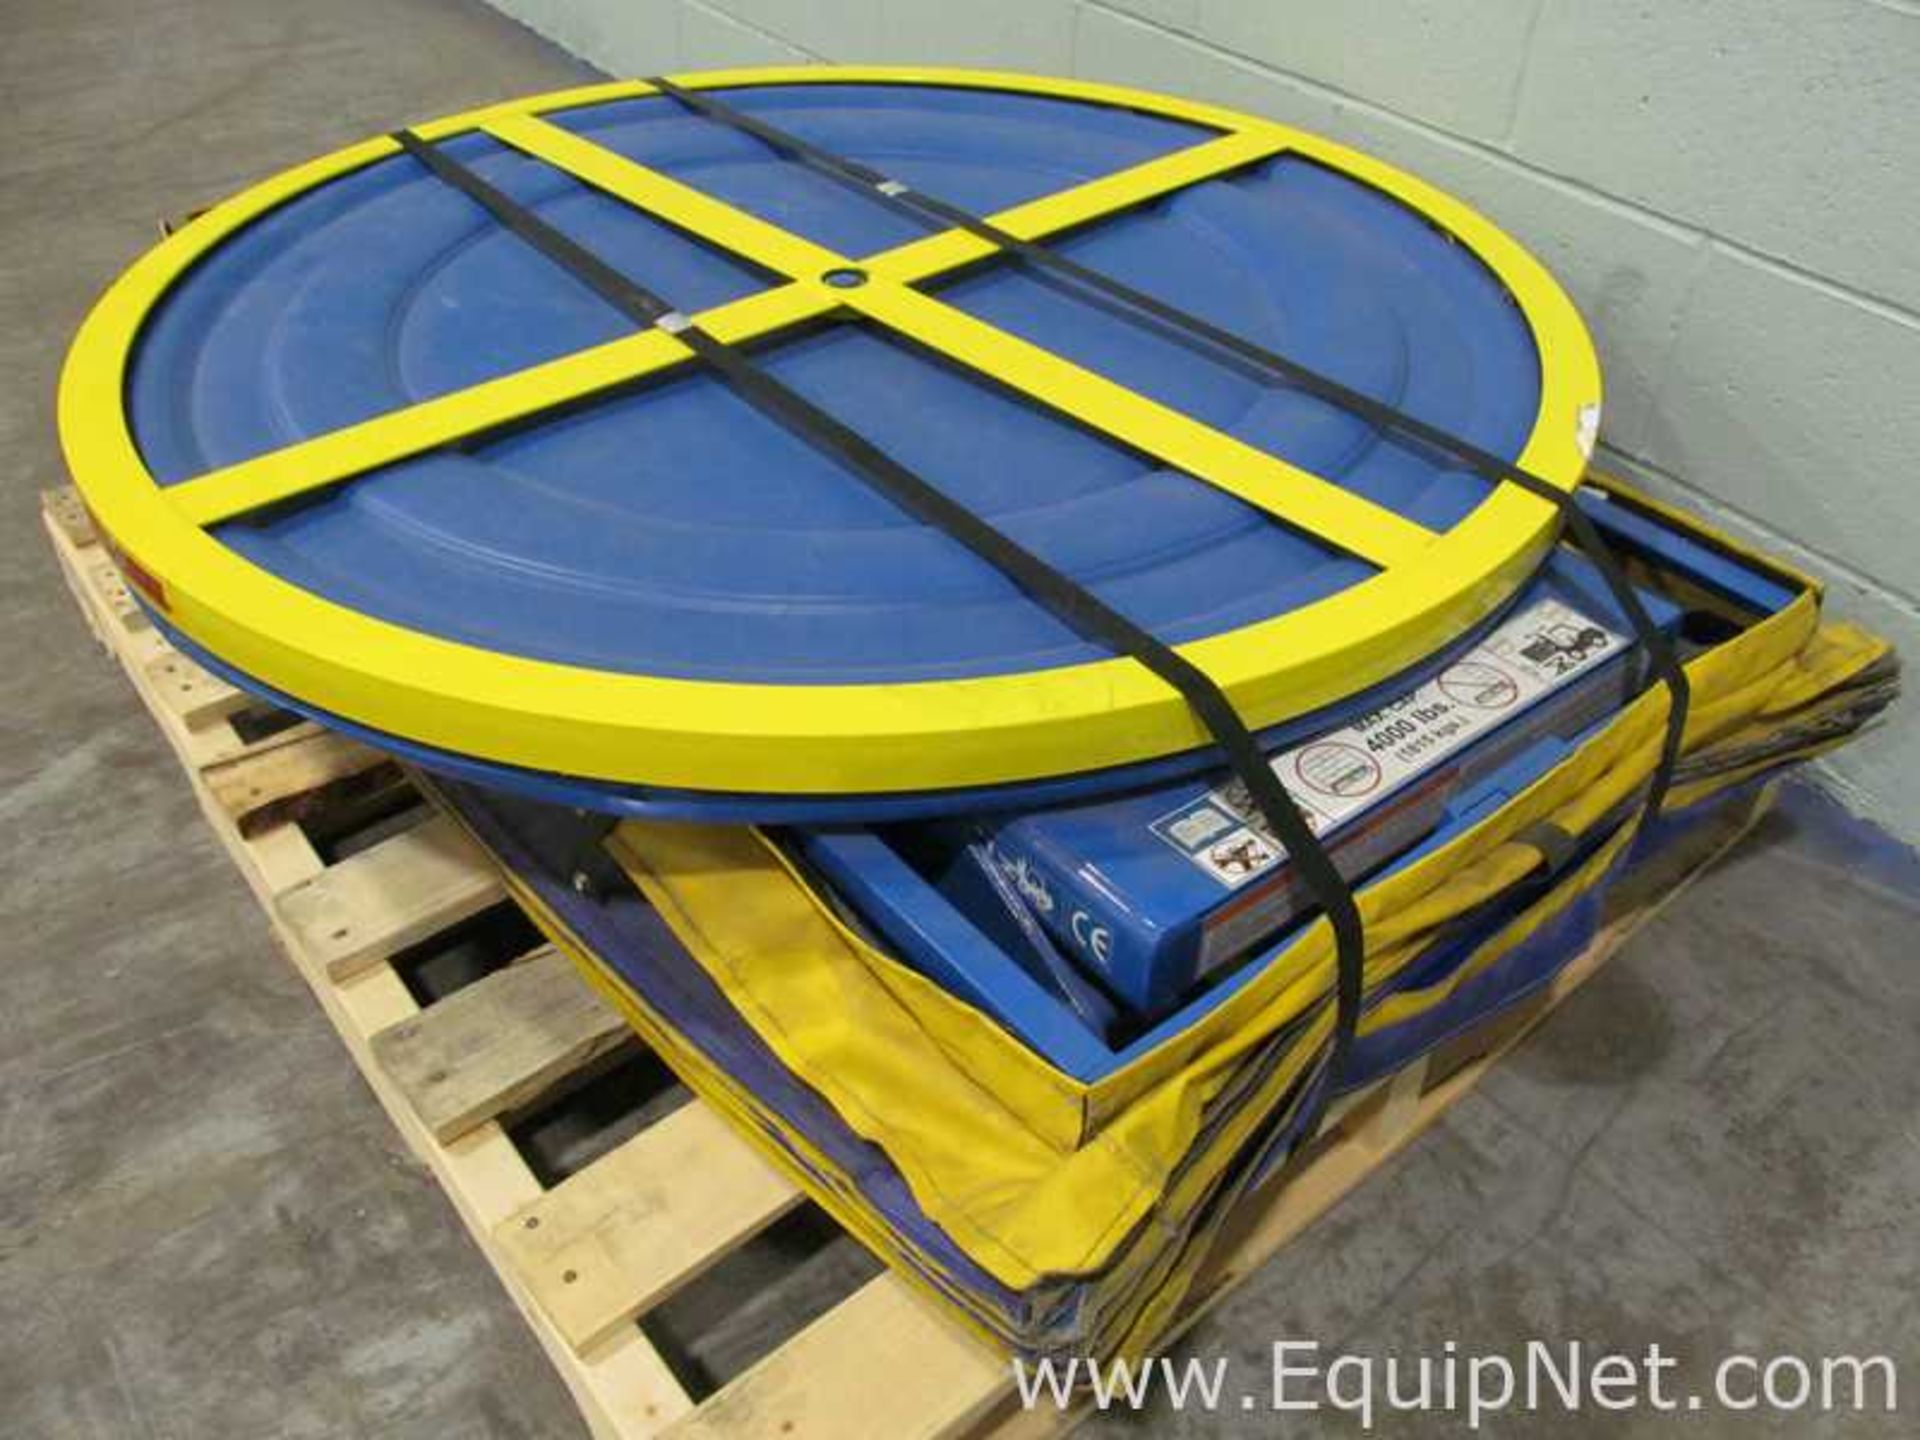 Bishamon EZ Loader 45 Inch Pneumatic Self-Leveling Pallet Carousel Positioner - Image 2 of 8